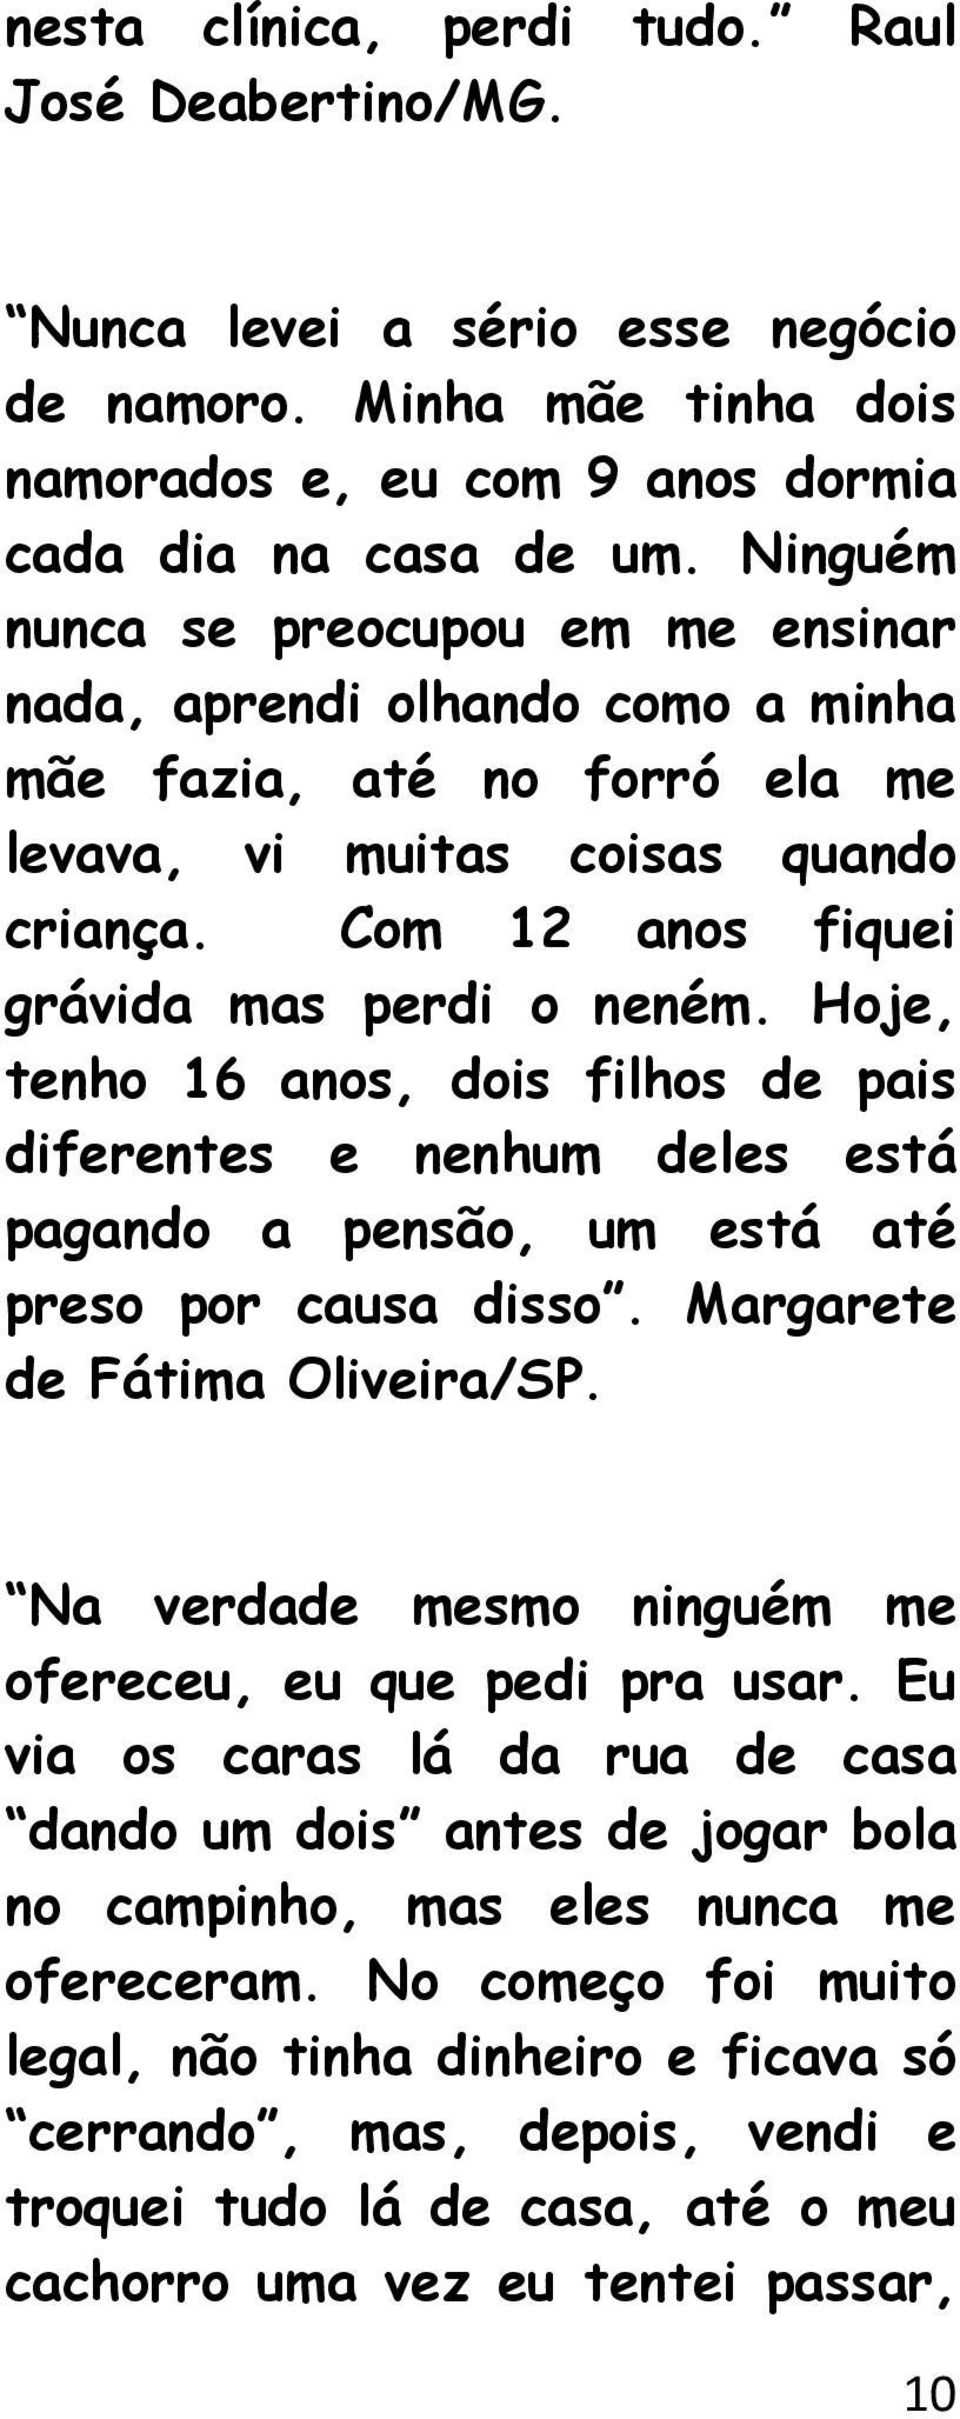 Hoje, tenho 16 anos, dois filhos de pais diferentes e nenhum deles está pagando a pensão, um está até preso por causa disso. Margarete de Fátima Oliveira/SP.